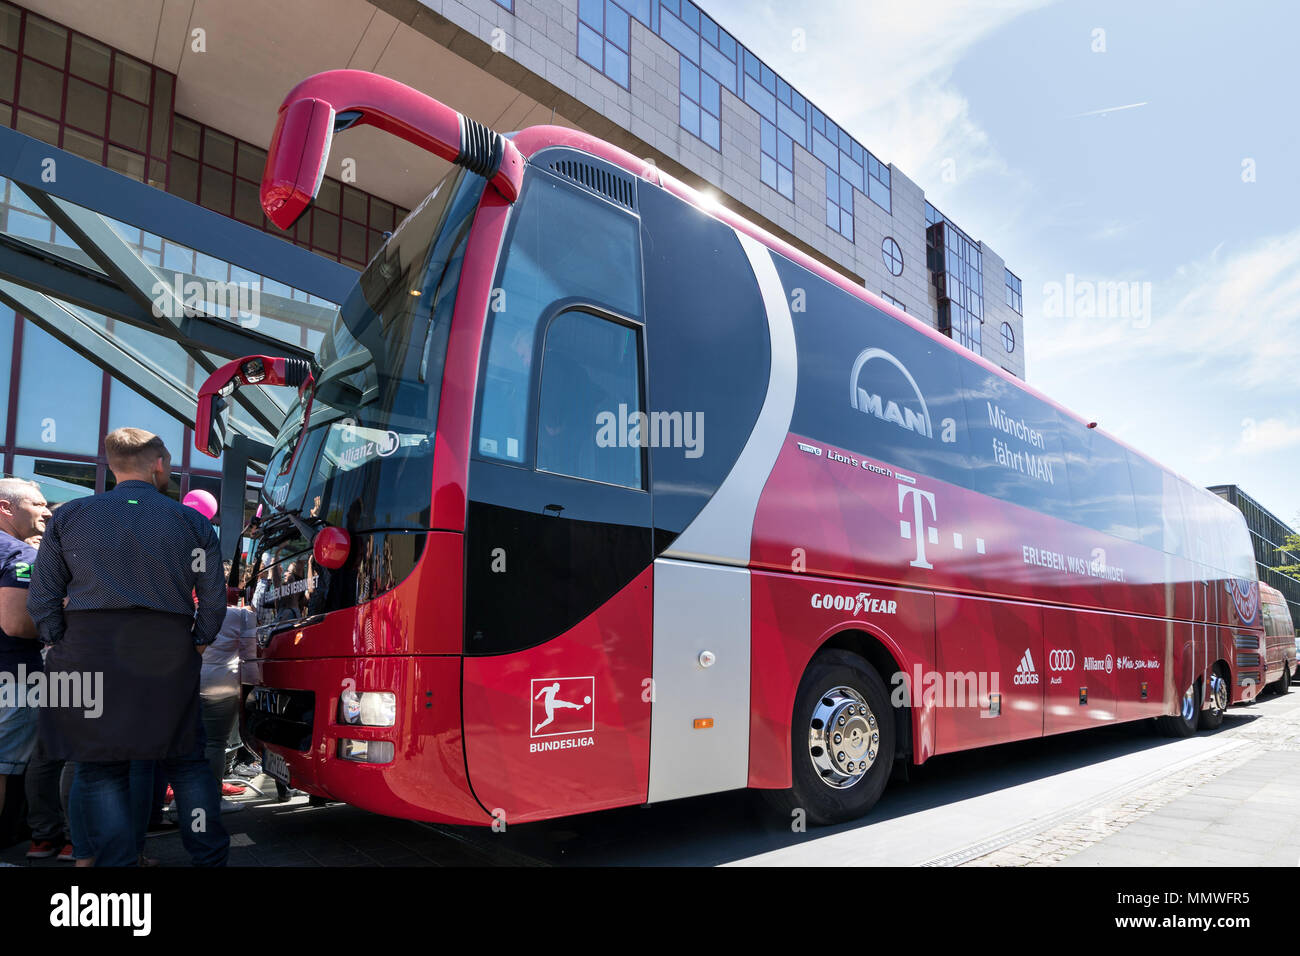 Team-Bus des FC Bayern München Fußball-Abteilung. Der FC Bayern der  erfolgreichste Verein in der deutschen Fußball-Geschichte Stockfotografie -  Alamy